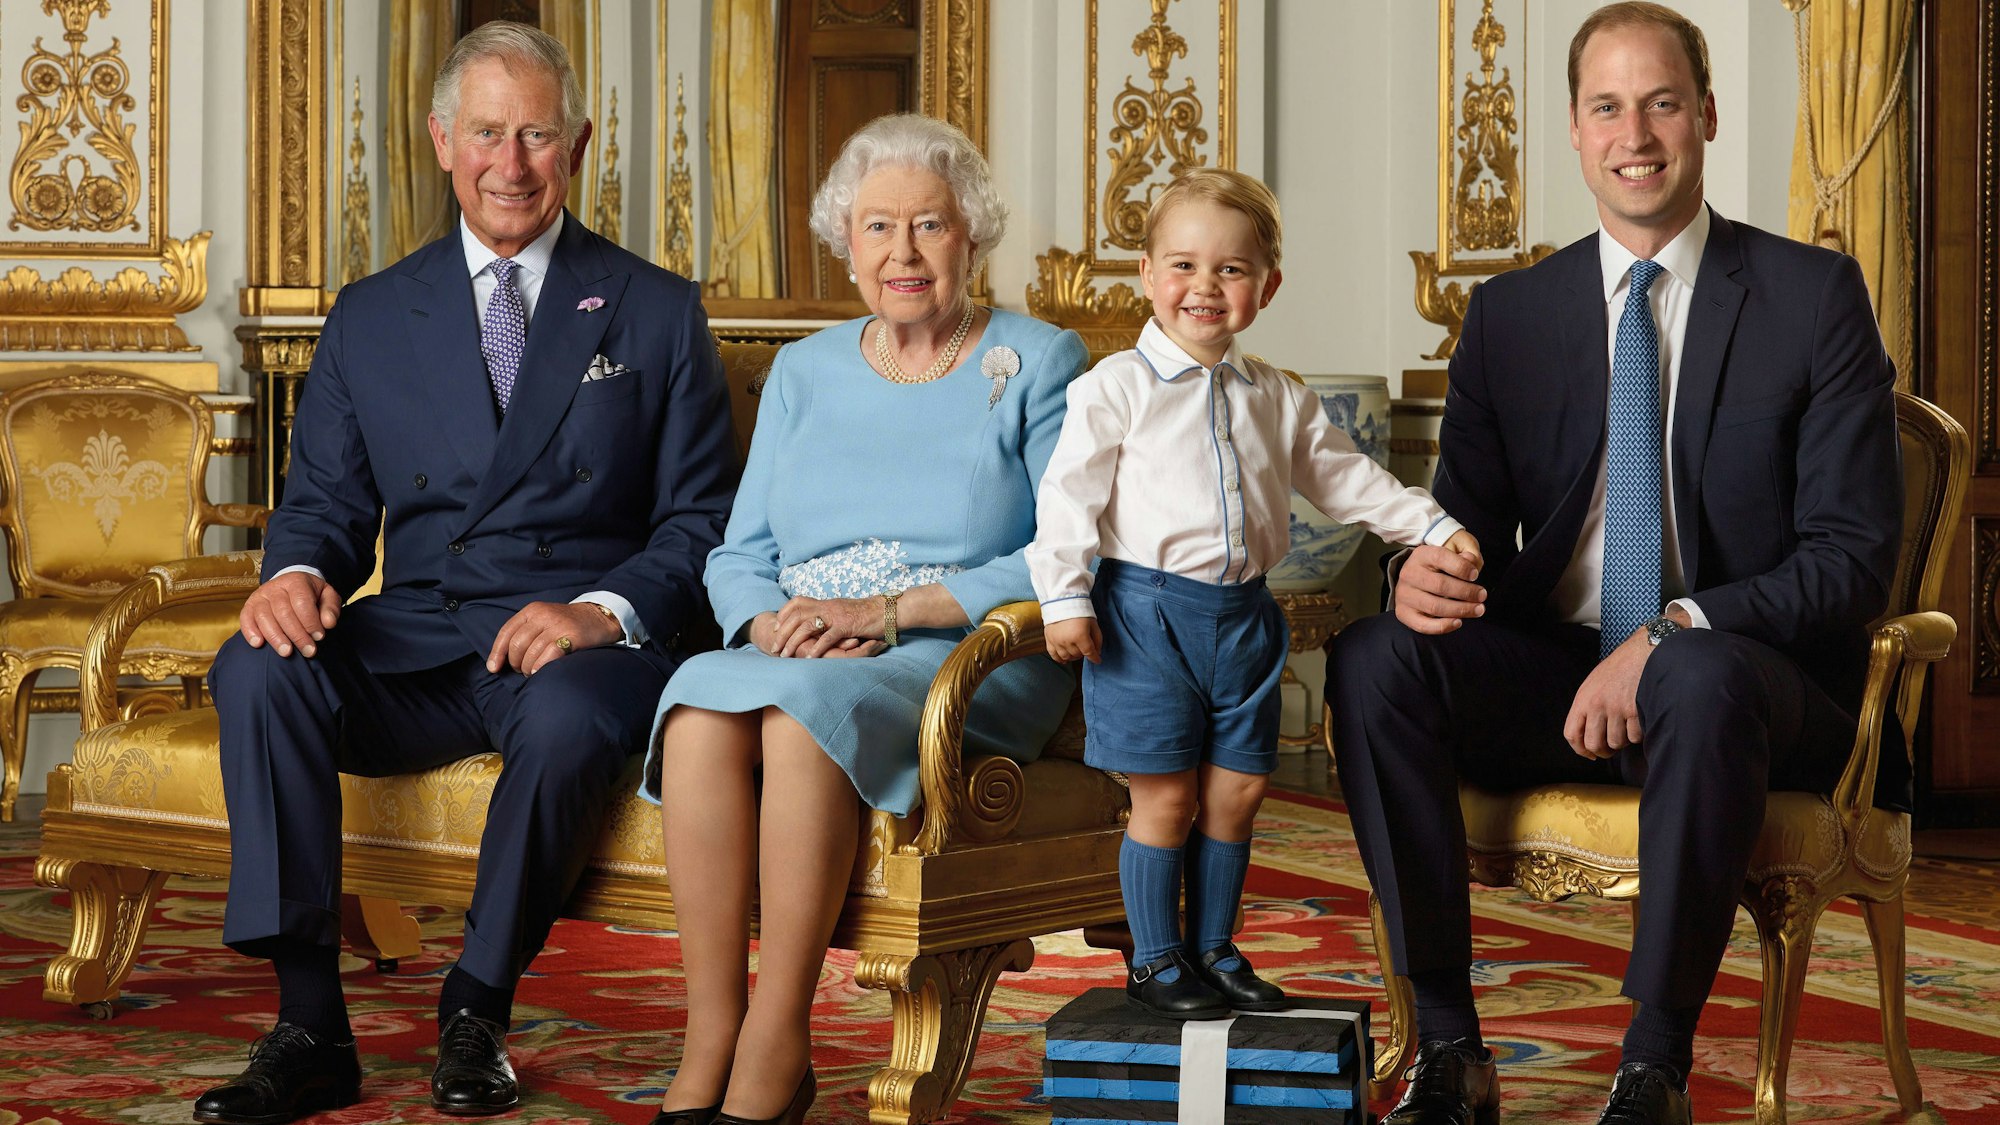 König Charles III, die 2022 verstorbene Königin Elizabeth II, Prinz George und Prinz William, der Thronfolger.